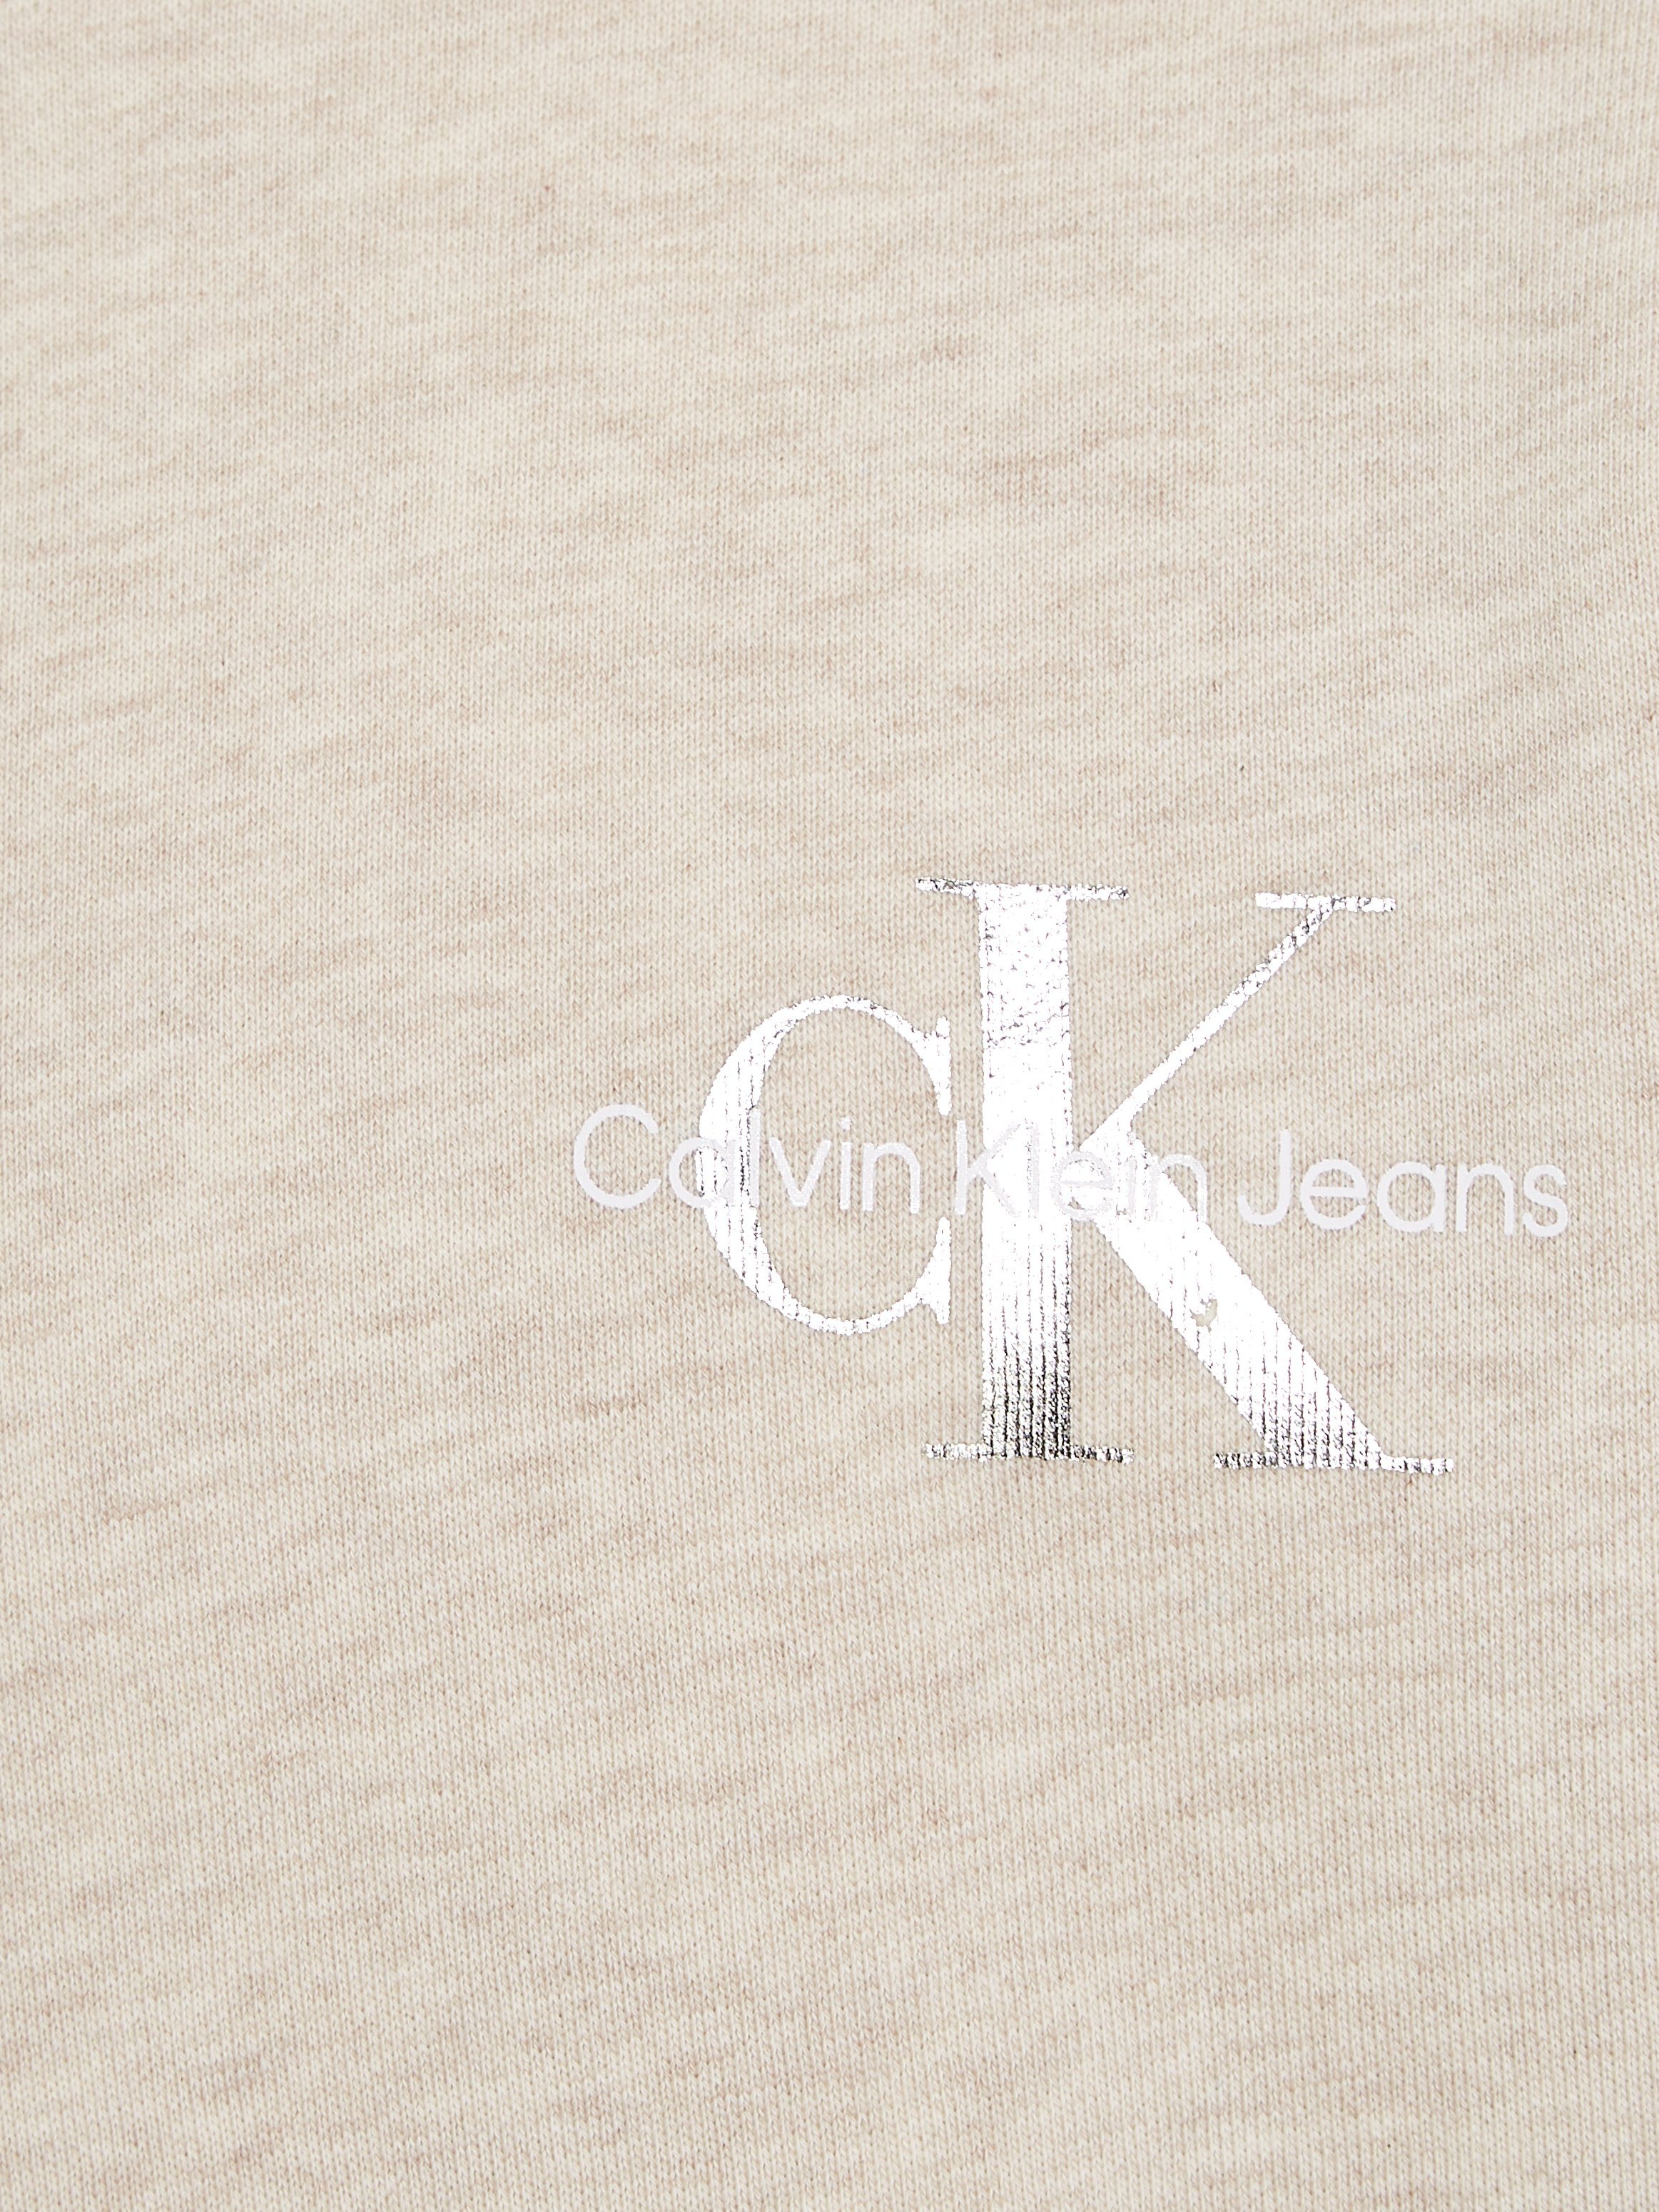 Jeans Calvin mit Heather Klein SWEATSHIRT MONOGRAM Logodruck CN Vanilla Sweatshirt